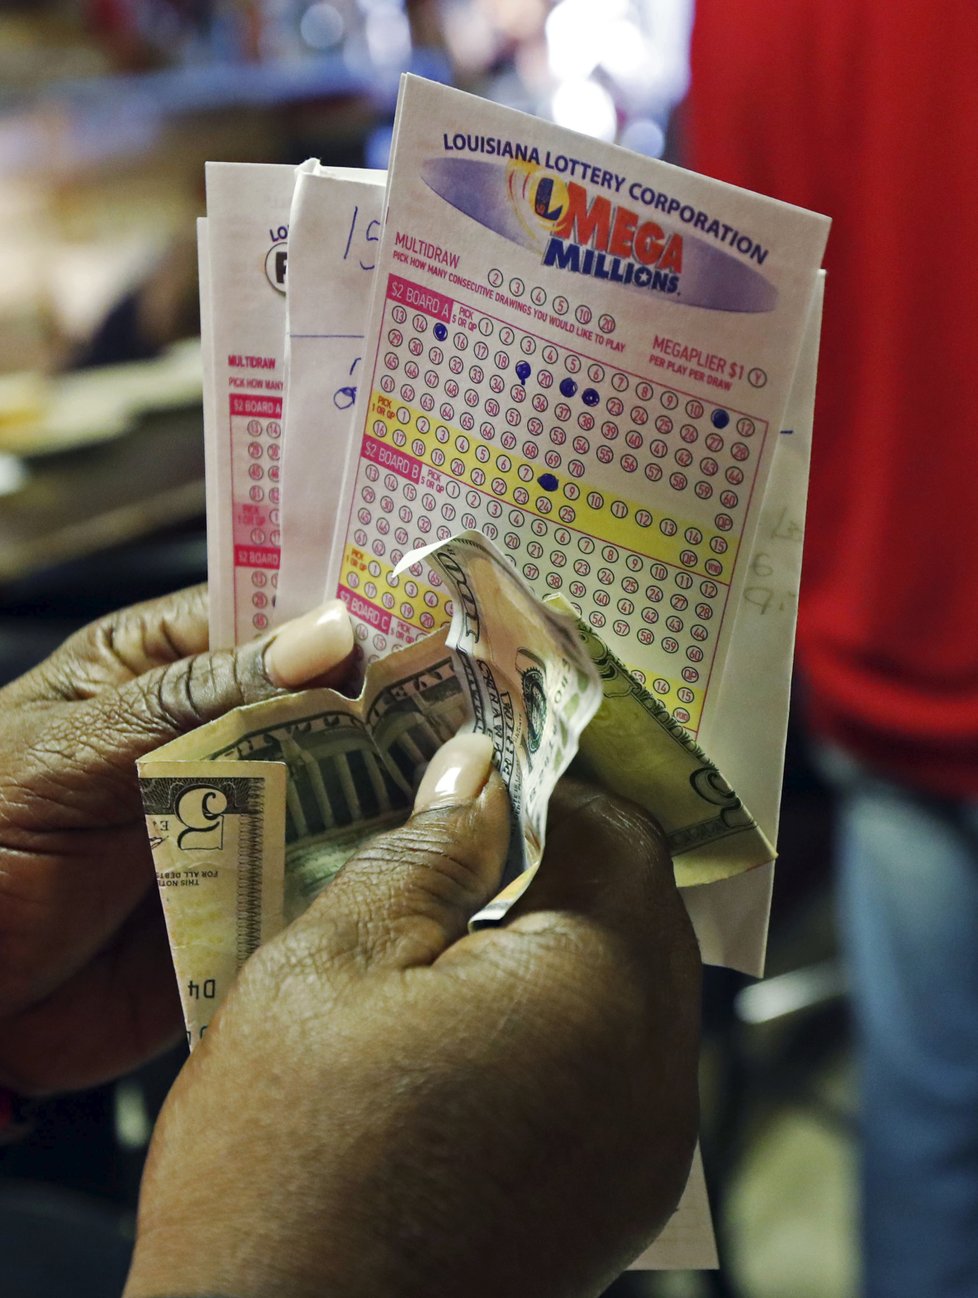 Jackpot ve výši 36 miliard korun! Nejvyšší výhry padají v USA, nejbohatší loterii má Španělsko